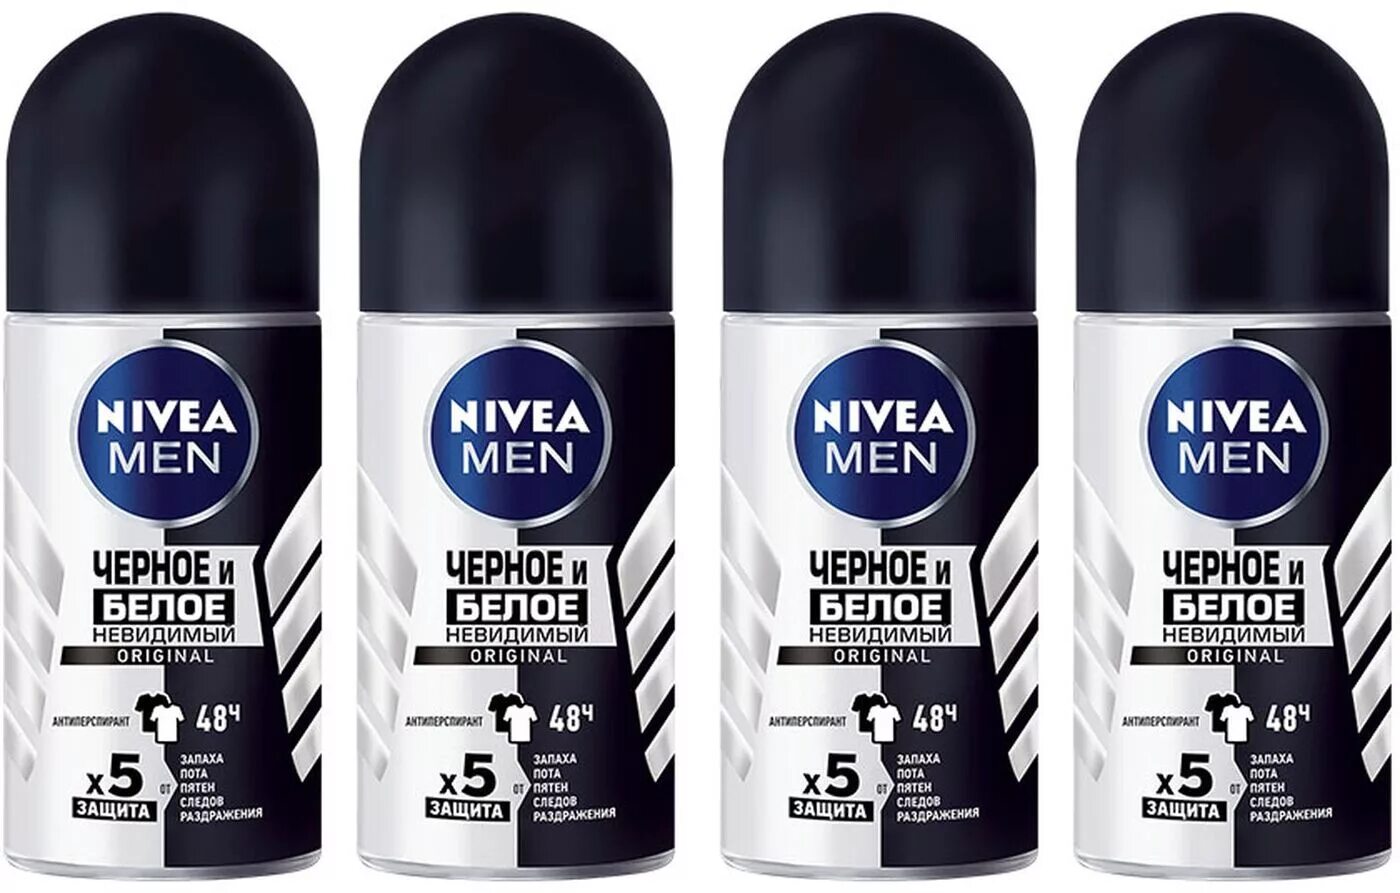 Дезодорант-антиперспирант шариковый Nivea men "черное и белое" 50 мл. Nivea men черное и белое невидимый Original. Nivea men 50мл стик черное и белое Original.